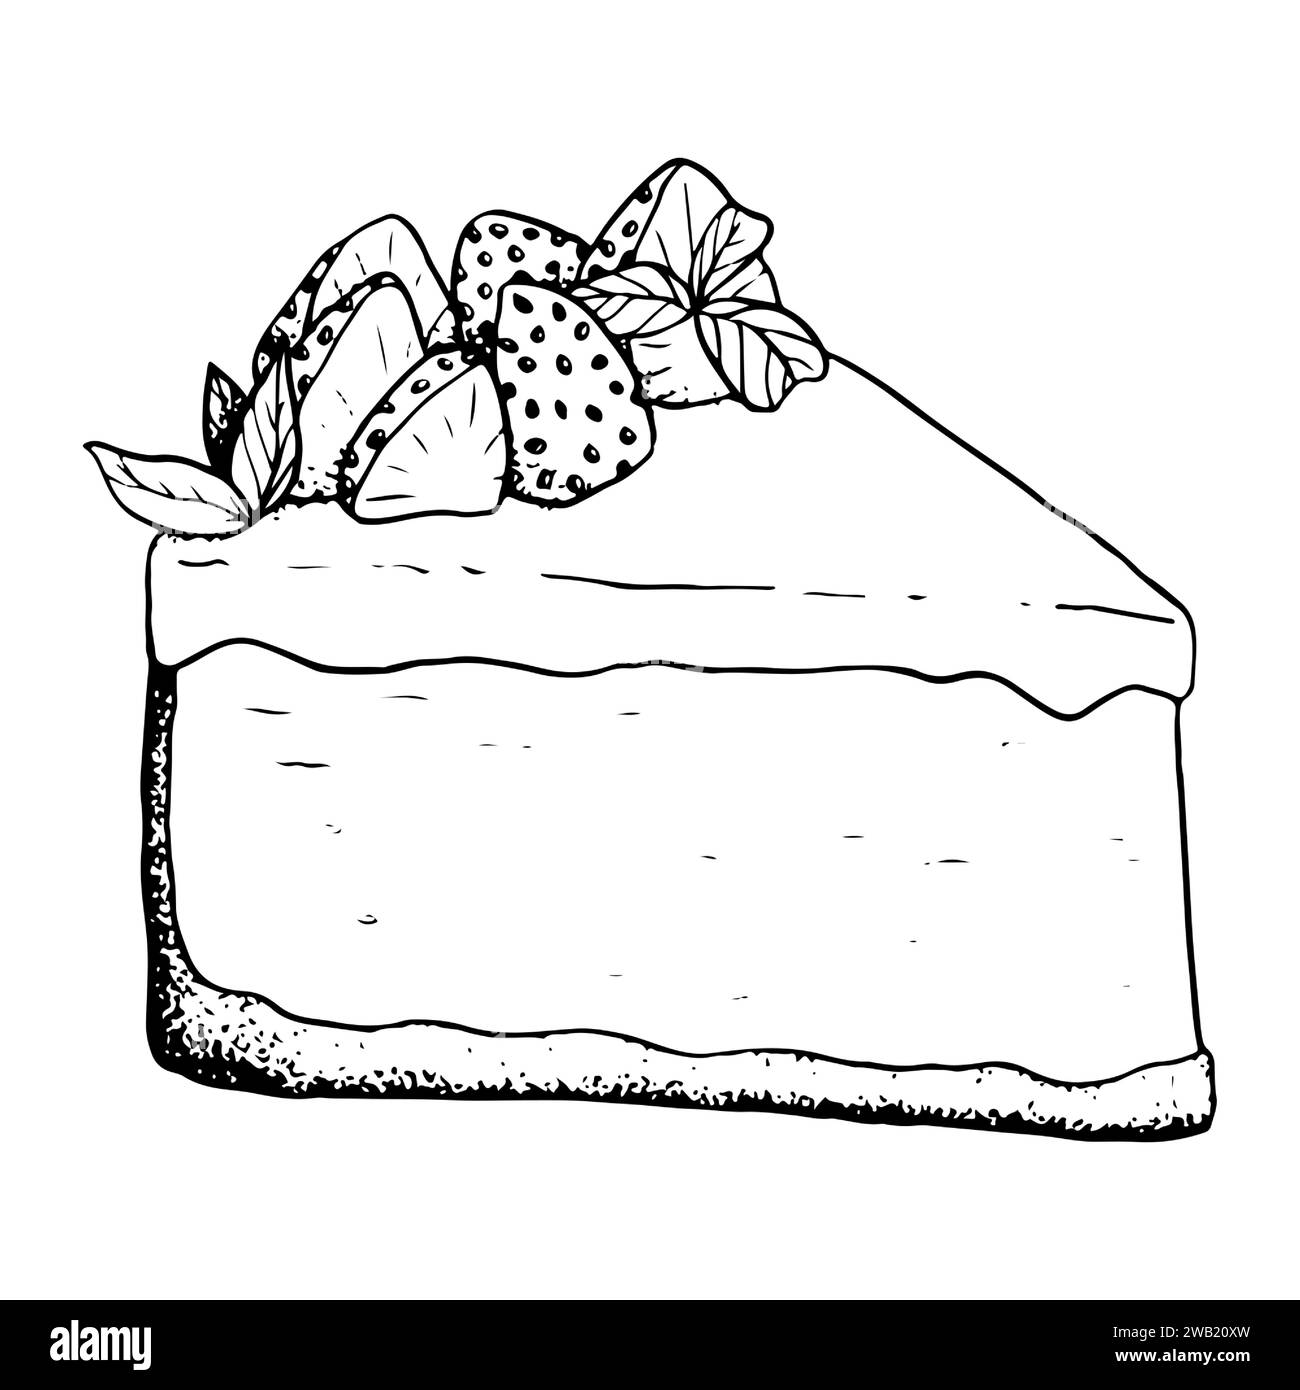 Vektor Erdbeere Käsekuchen Dessert schwarz-weiß Illustration. Leckeres Dreieck-Kuchenstück mit Beeren und Minze Stock Vektor